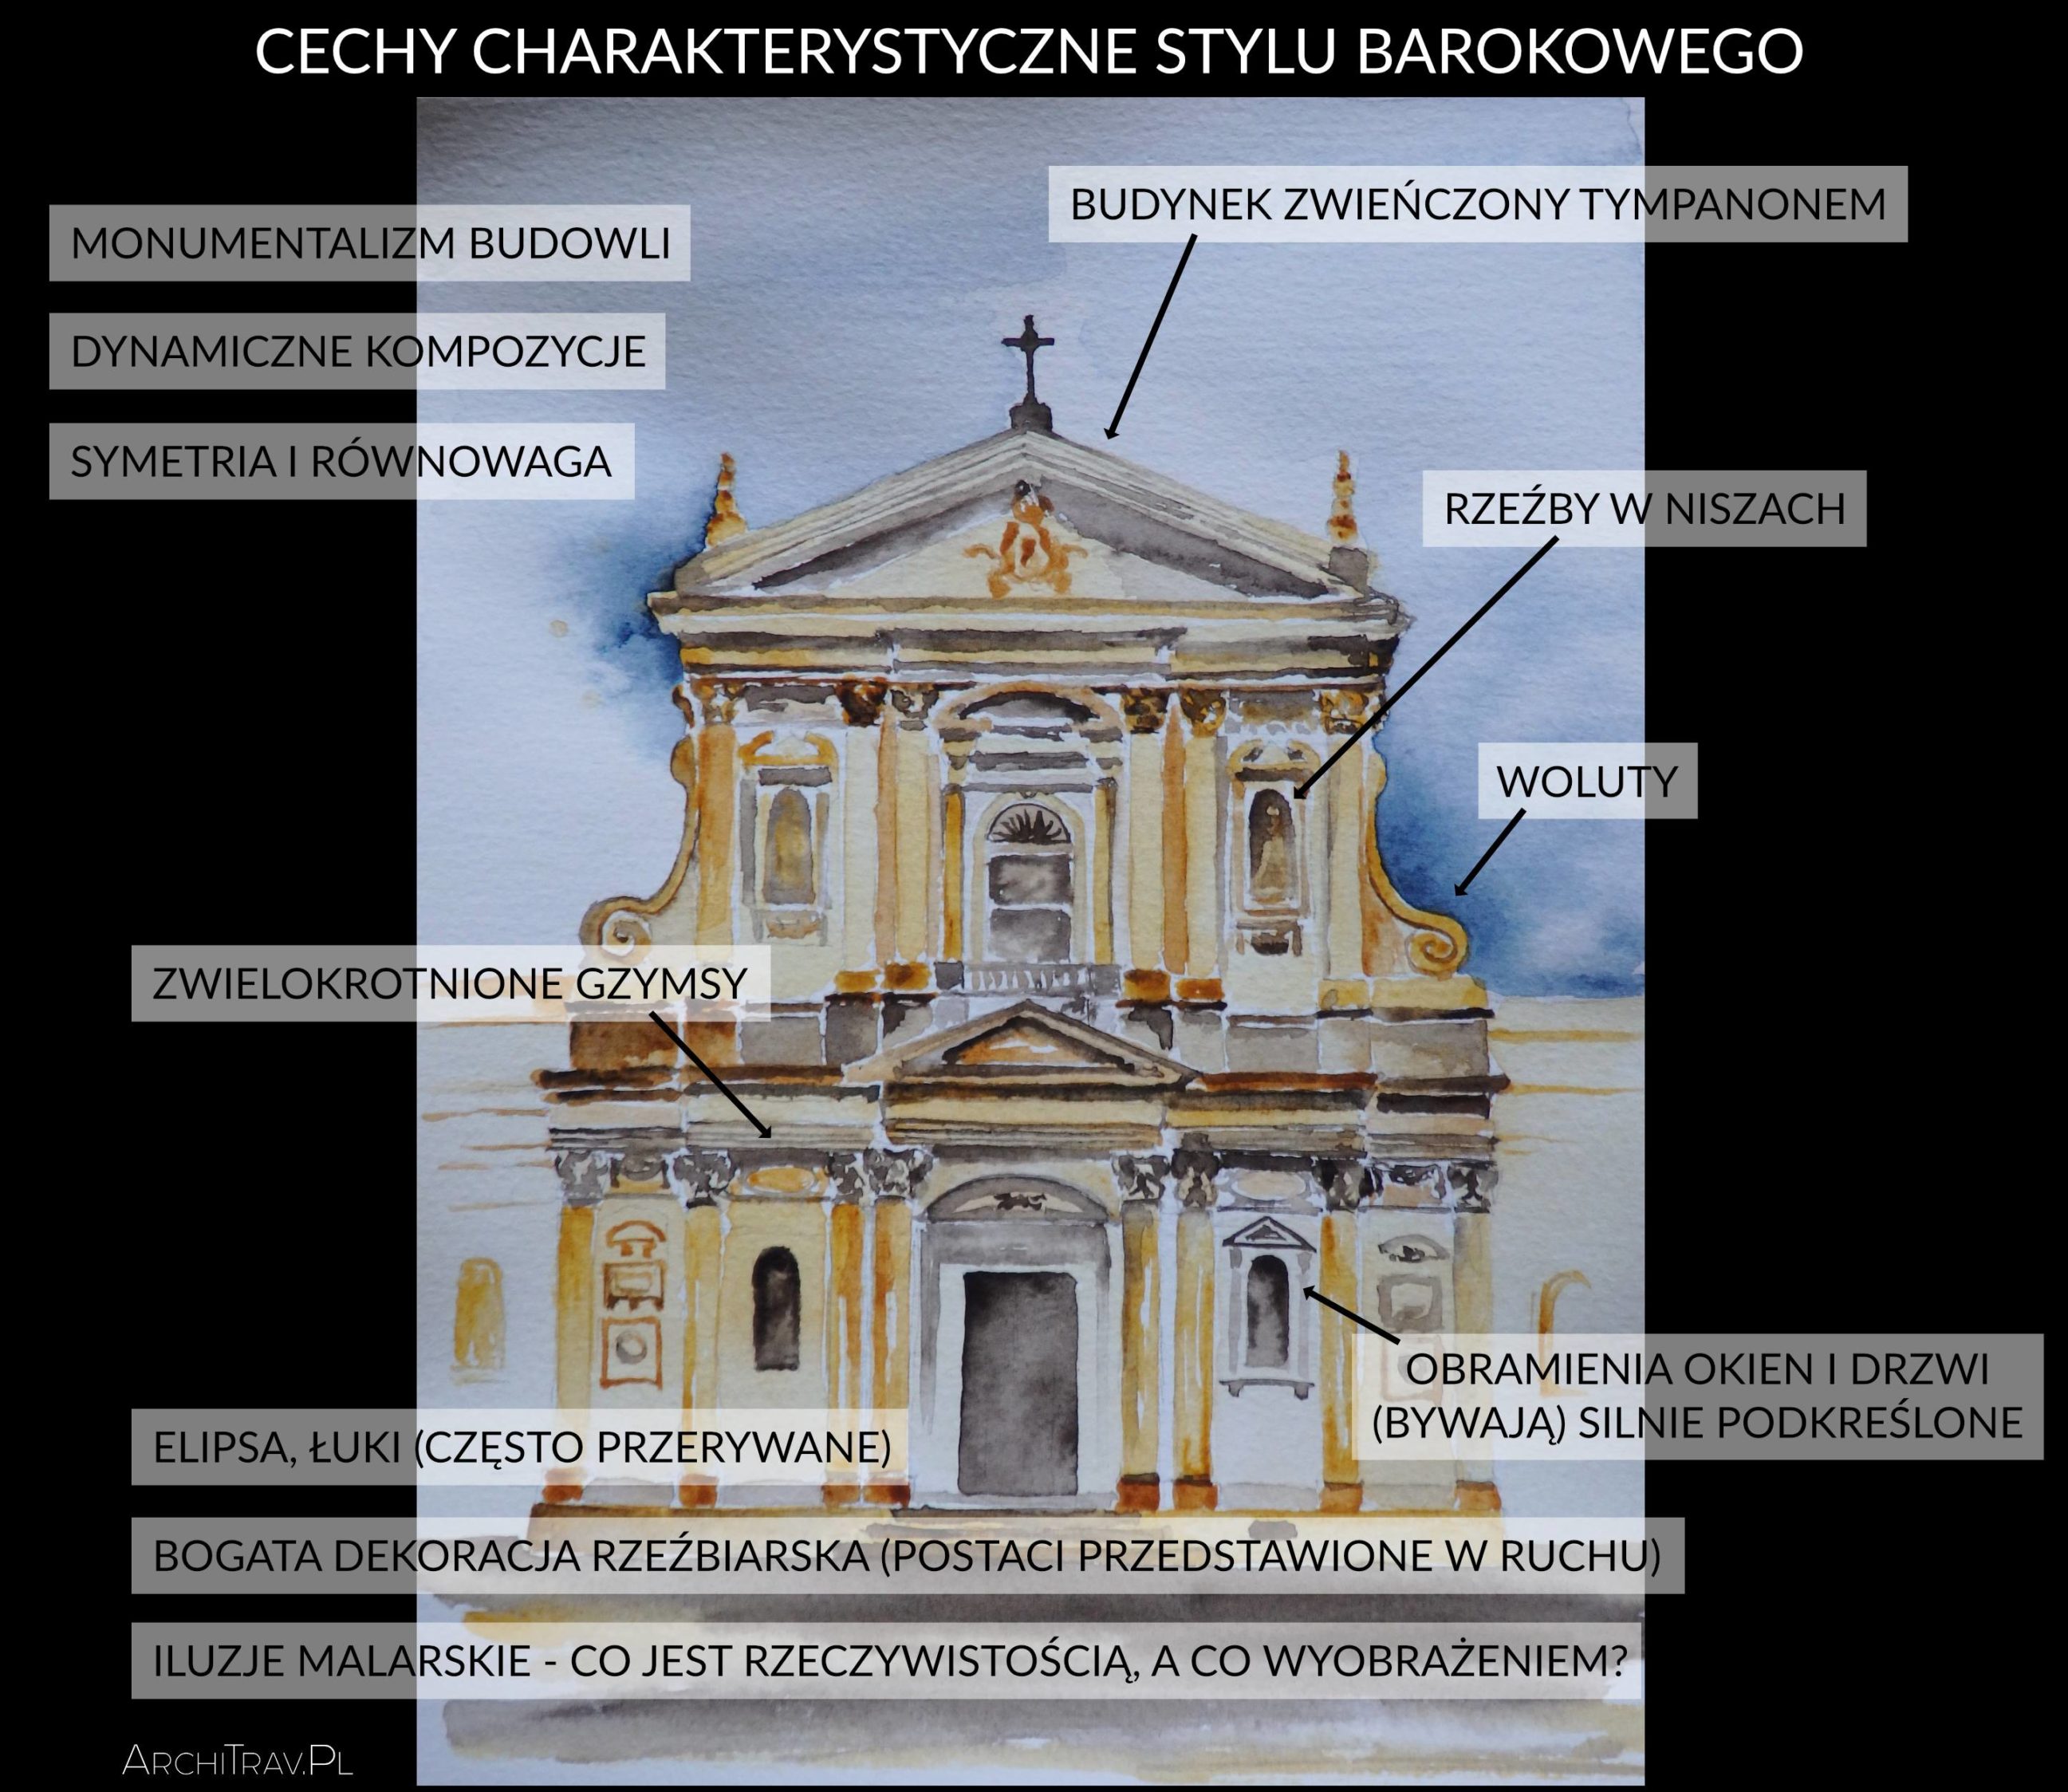 Historia Architektury - styl barokowy | ArchiTrav